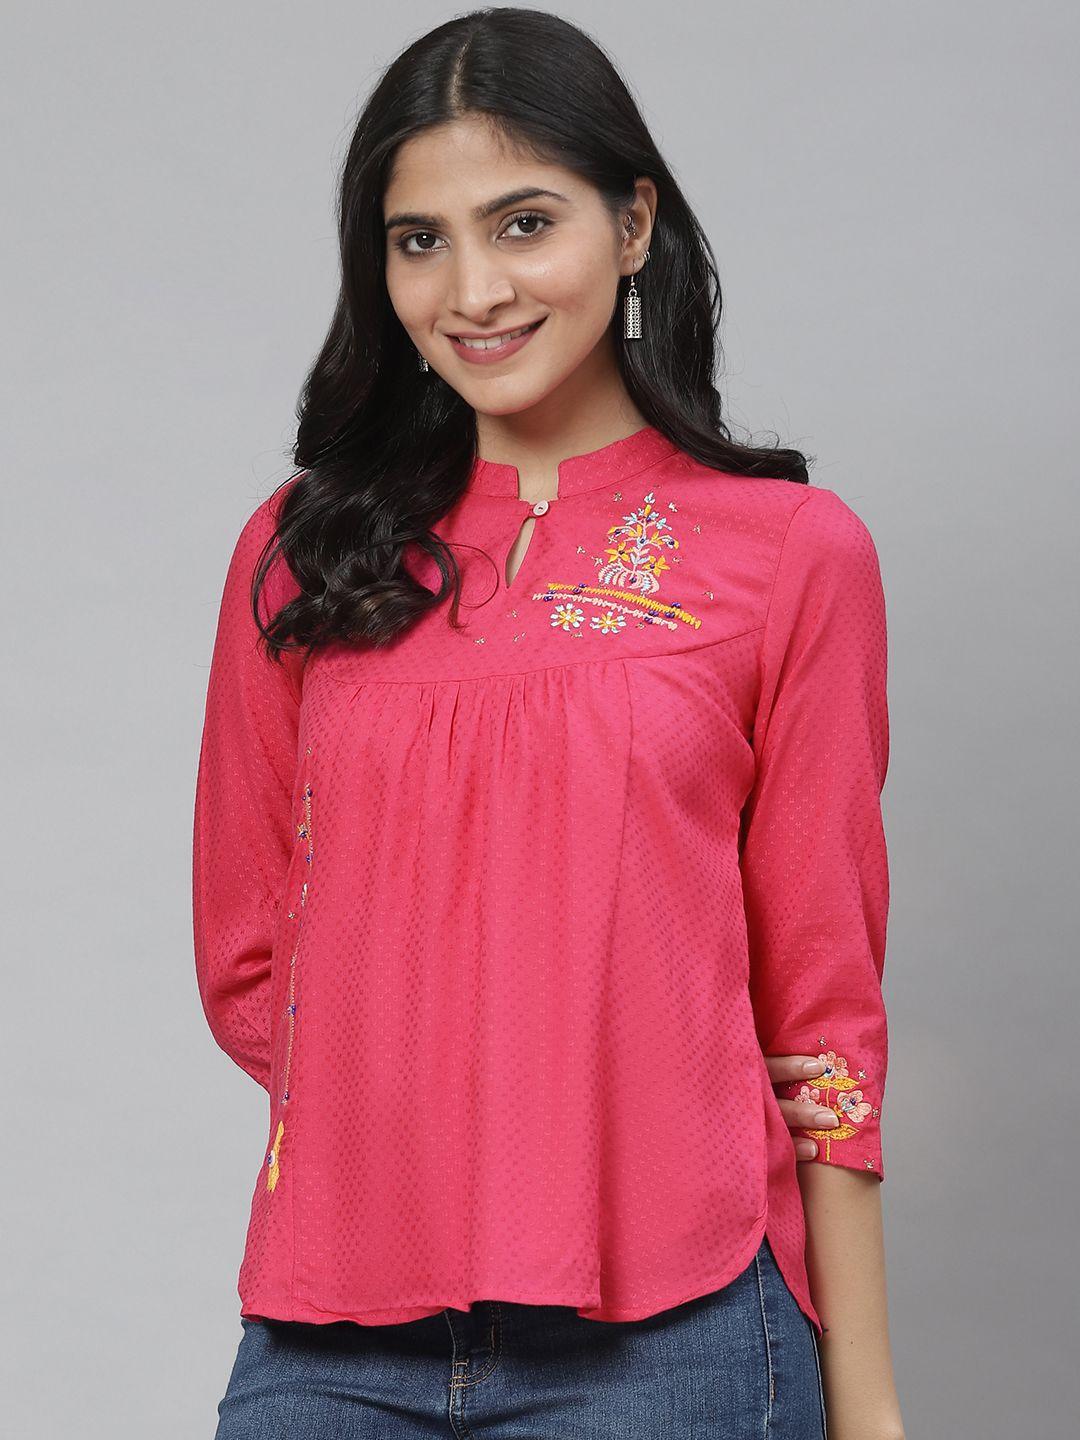 rangriti women pink self-design top